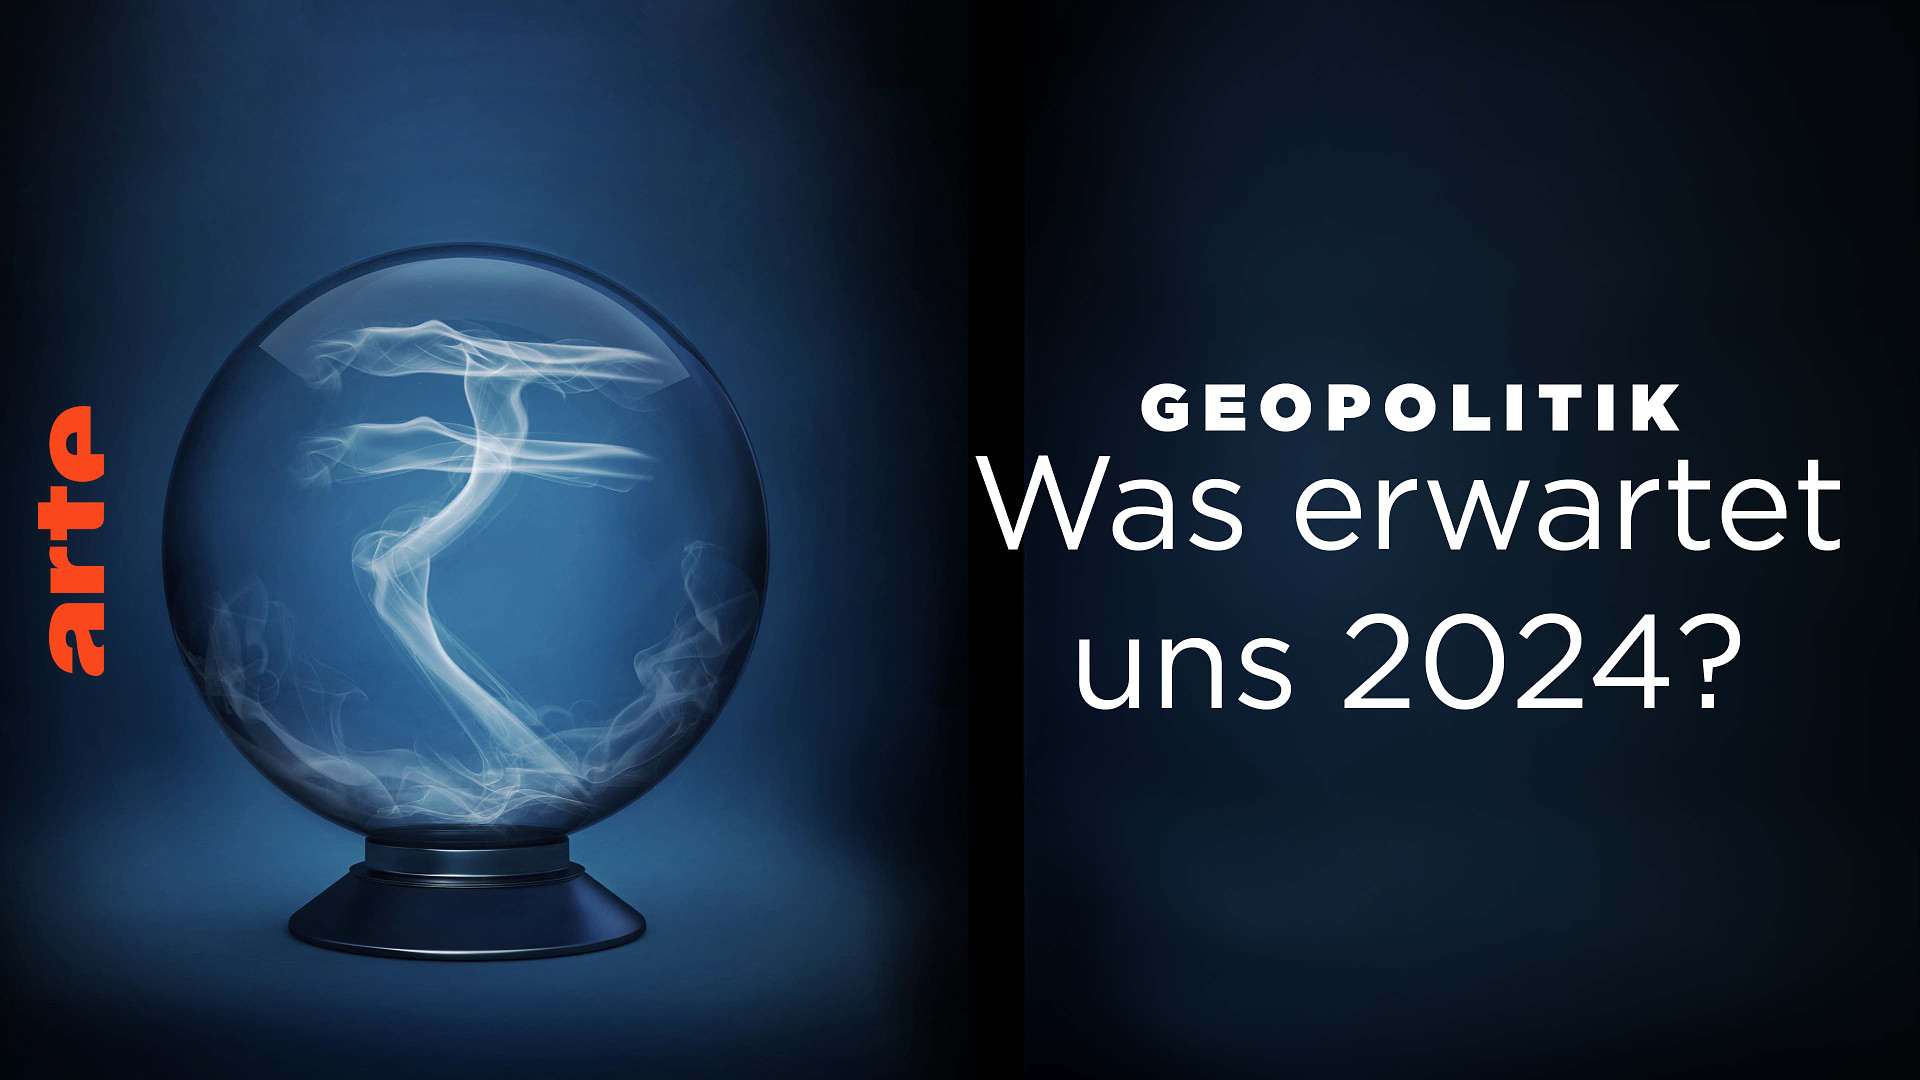 Geopolitik: Was erwartet uns 2024?